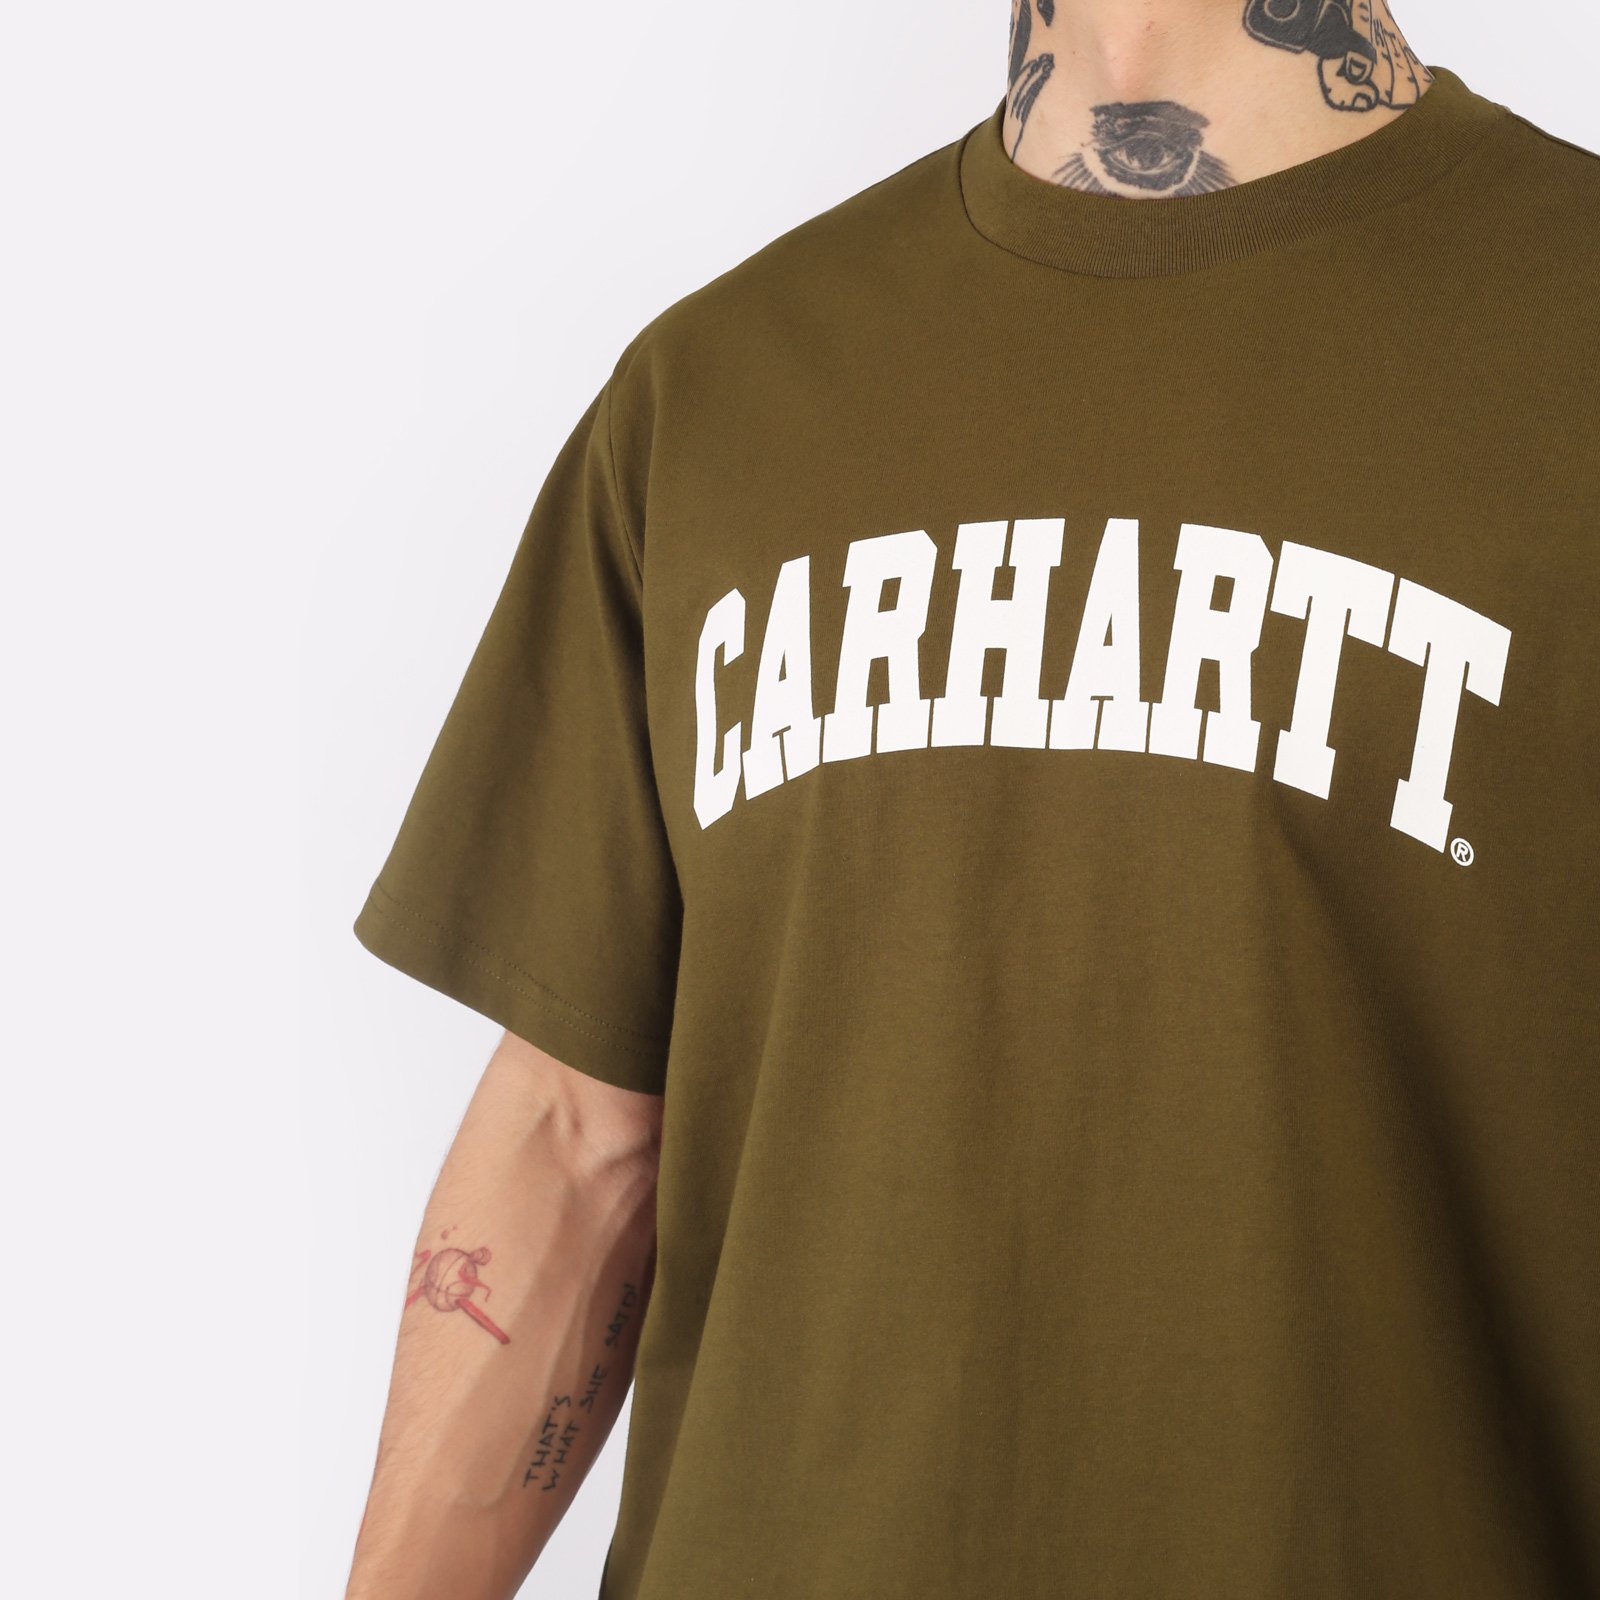 мужская футболка Carhartt WIP S/S University T-Shirt  (I028990-lumber/white)  - цена, описание, фото 4